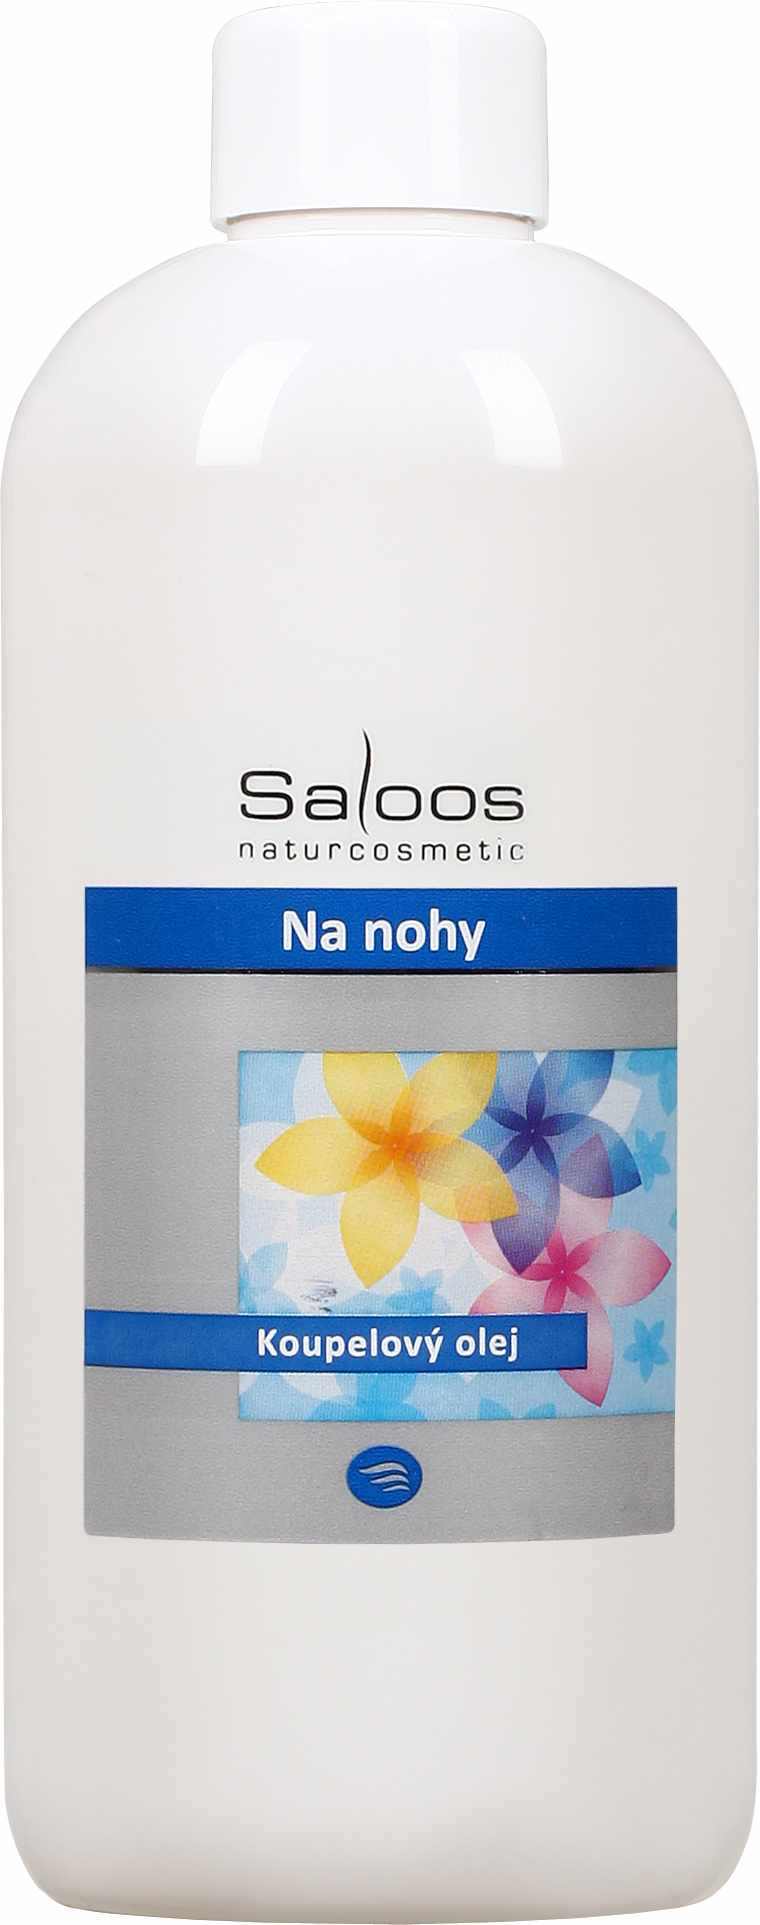 Saloos Na nohy - koupelový olej Balení: 250 ml